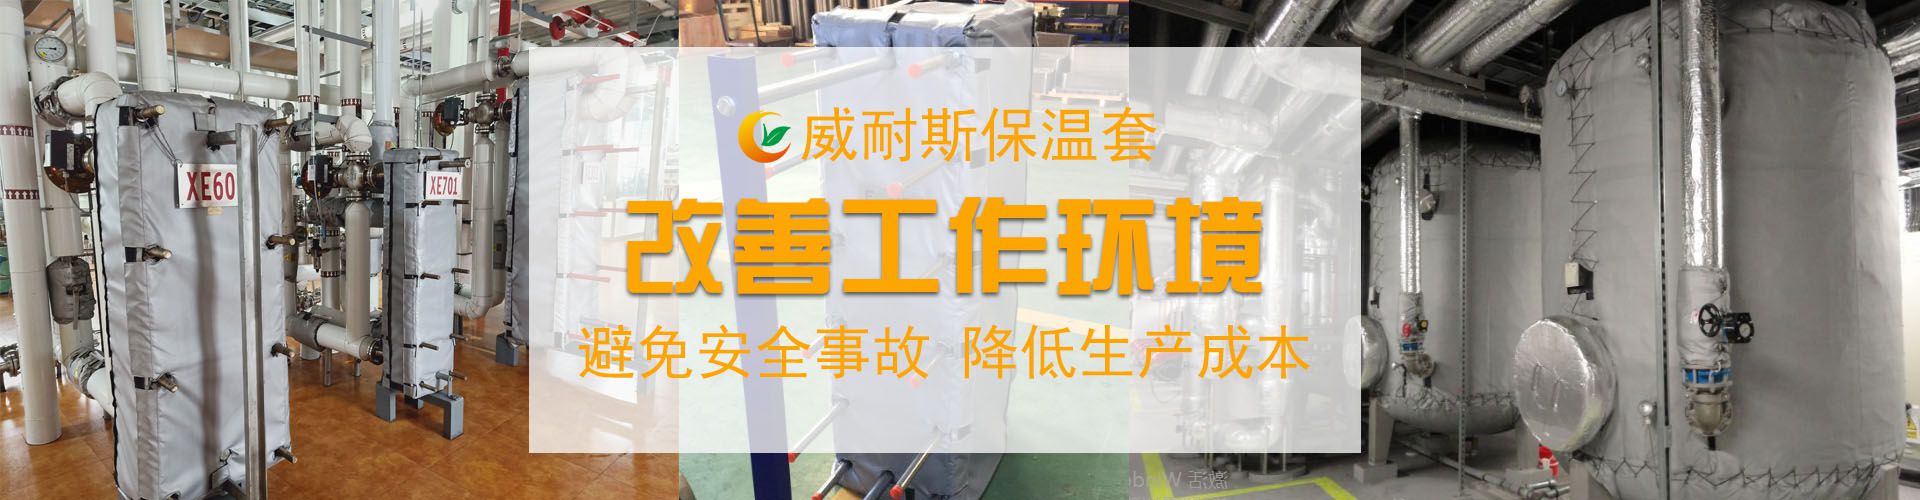 湖南威耐斯新材料科技有限公司